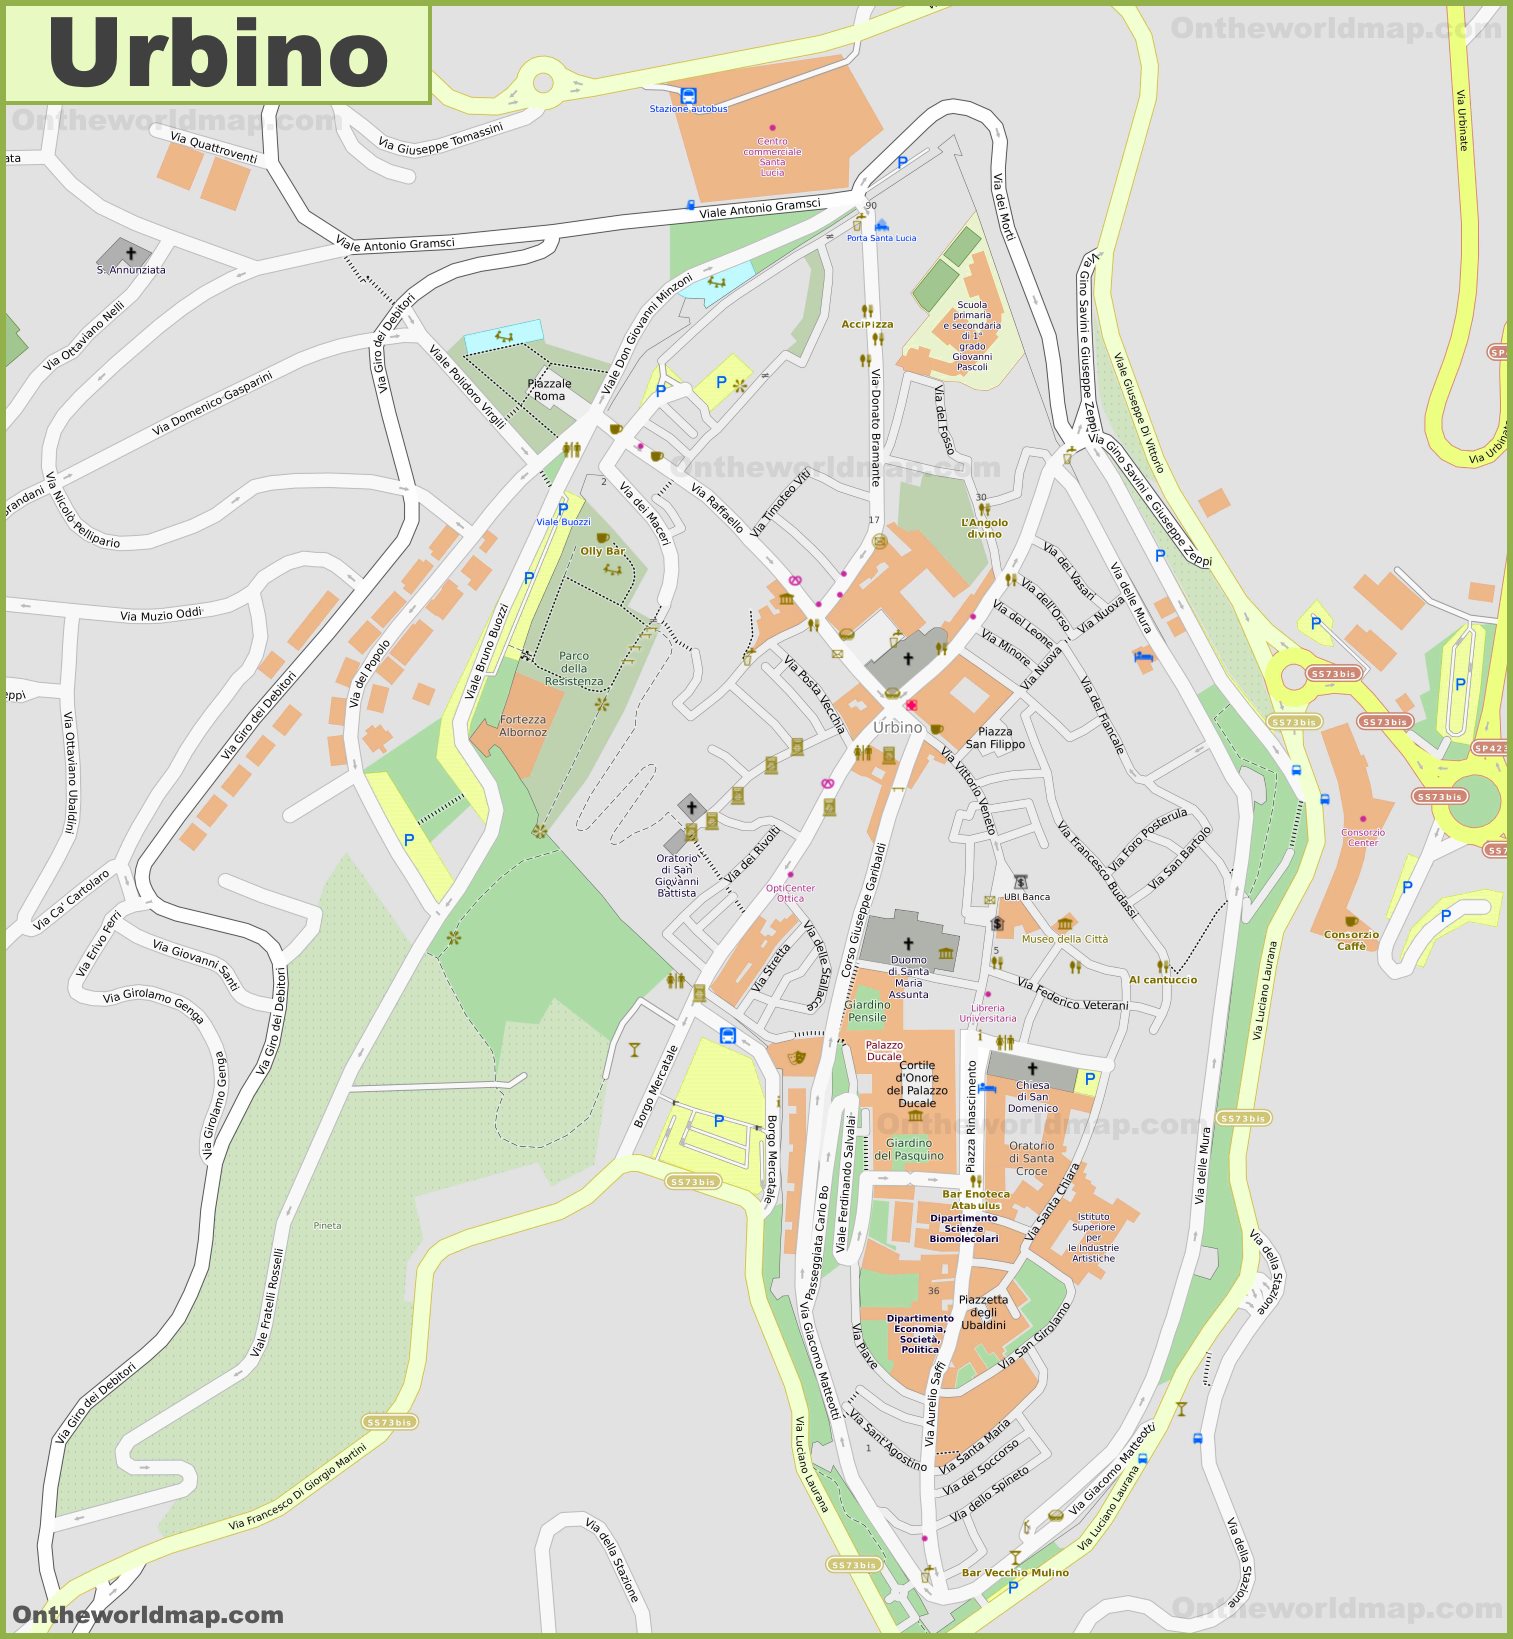 urbino tourist map